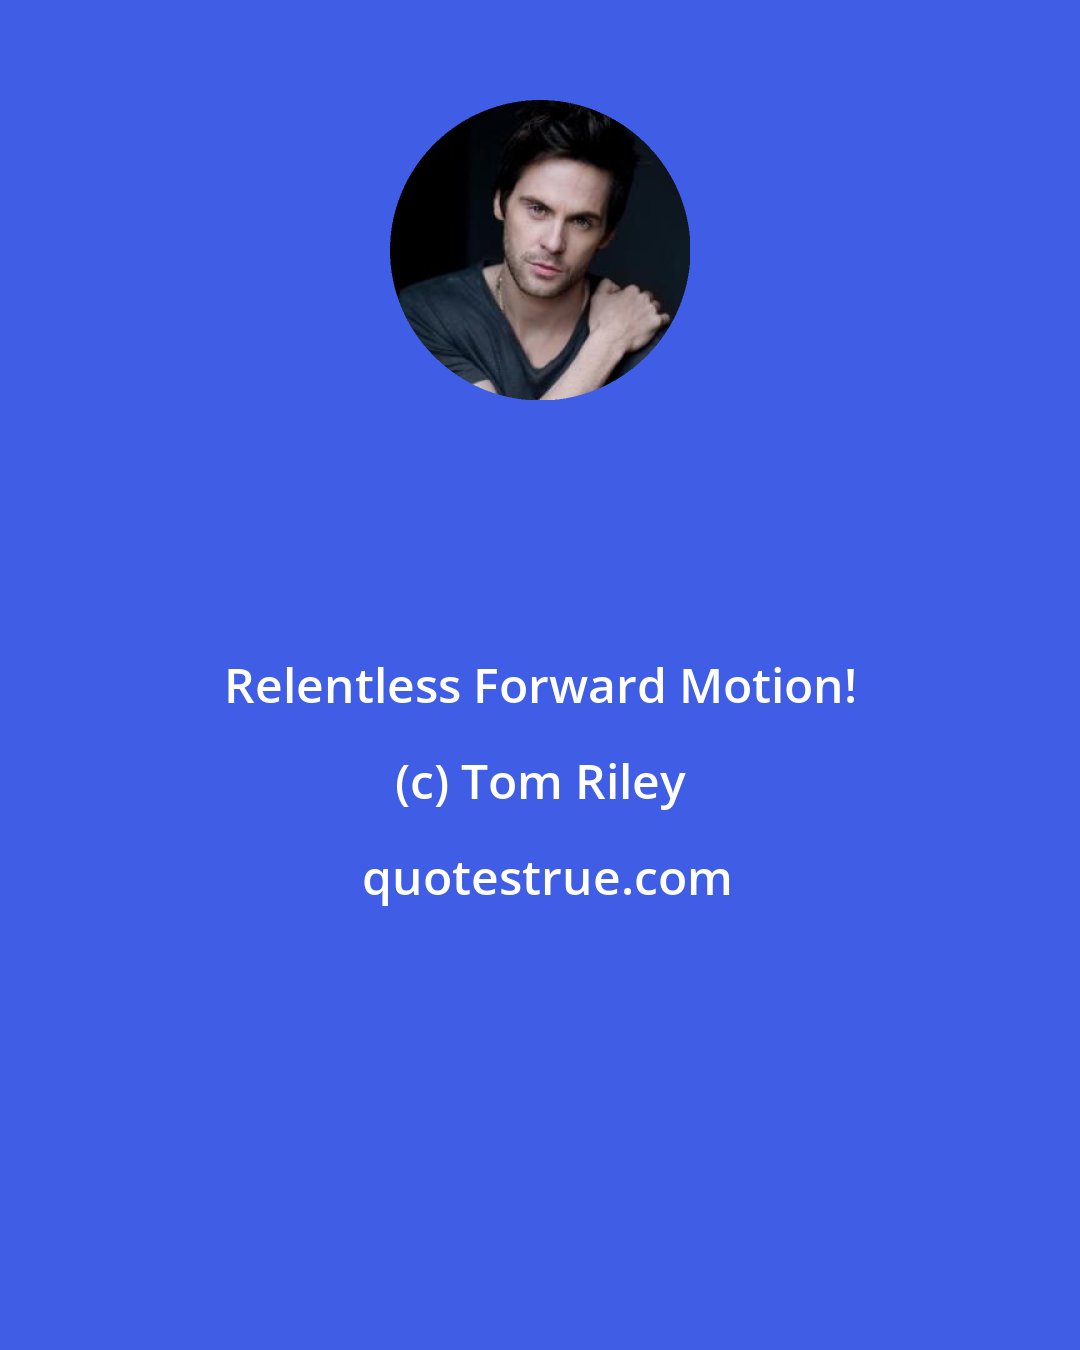 Tom Riley: Relentless Forward Motion!